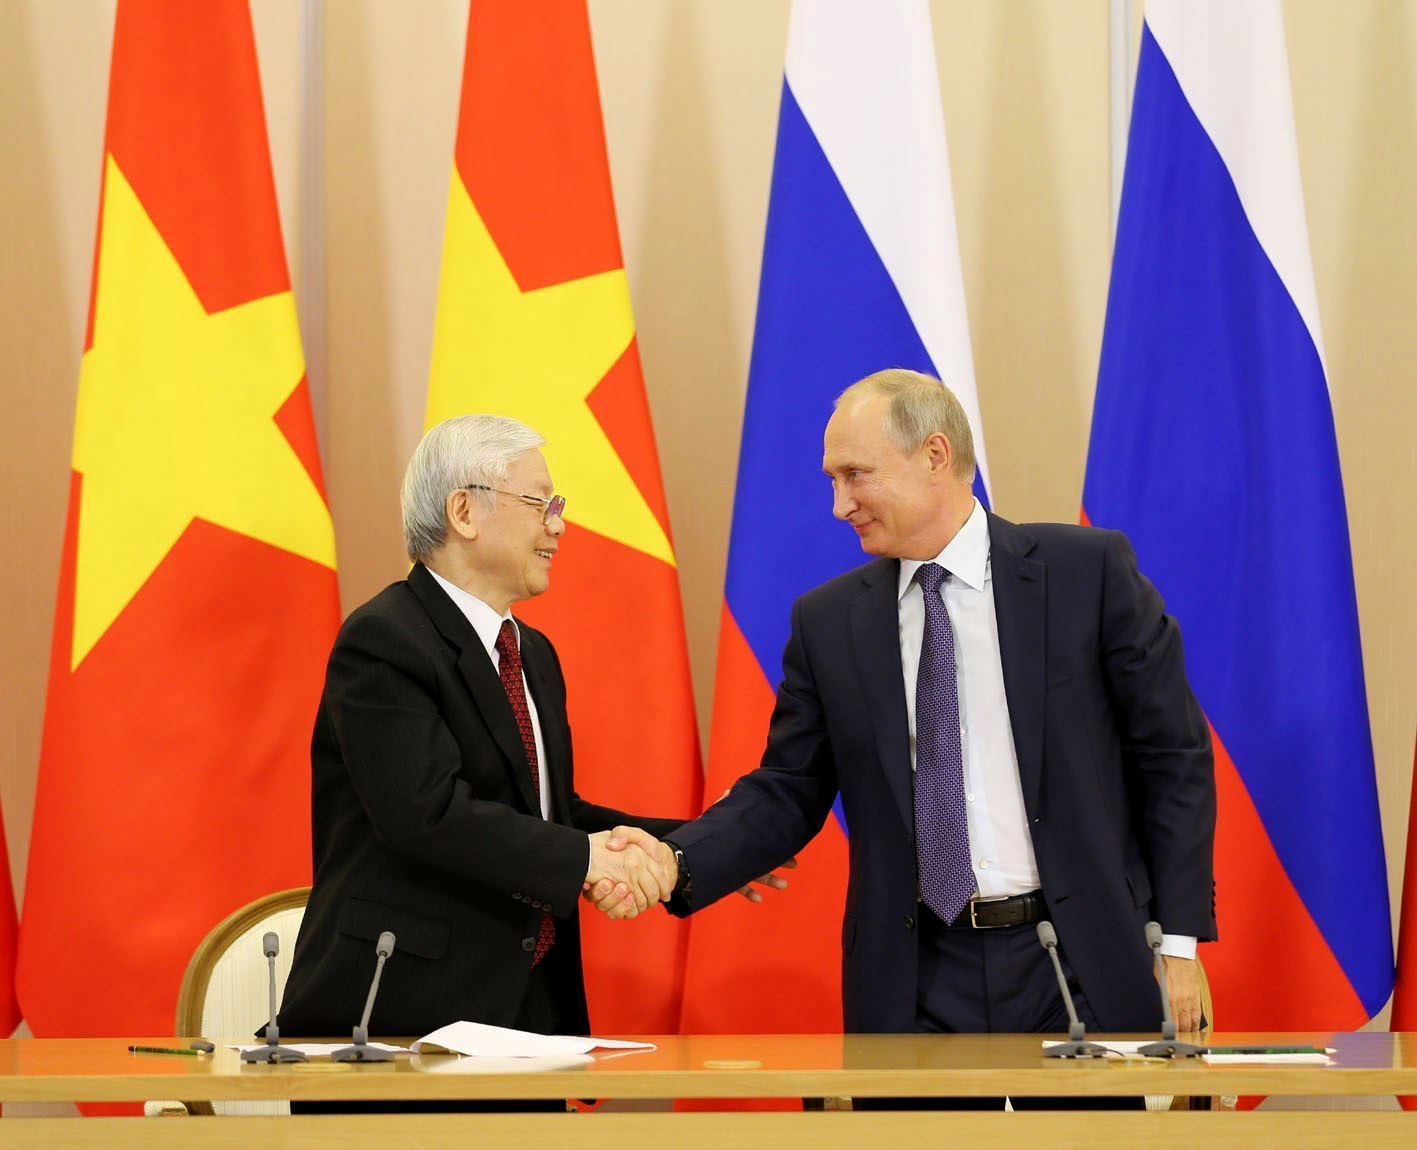 Hợp tác kỹ thuật là trụ cột đặc biệt quan trọng trong quan hệ Việt - Nga